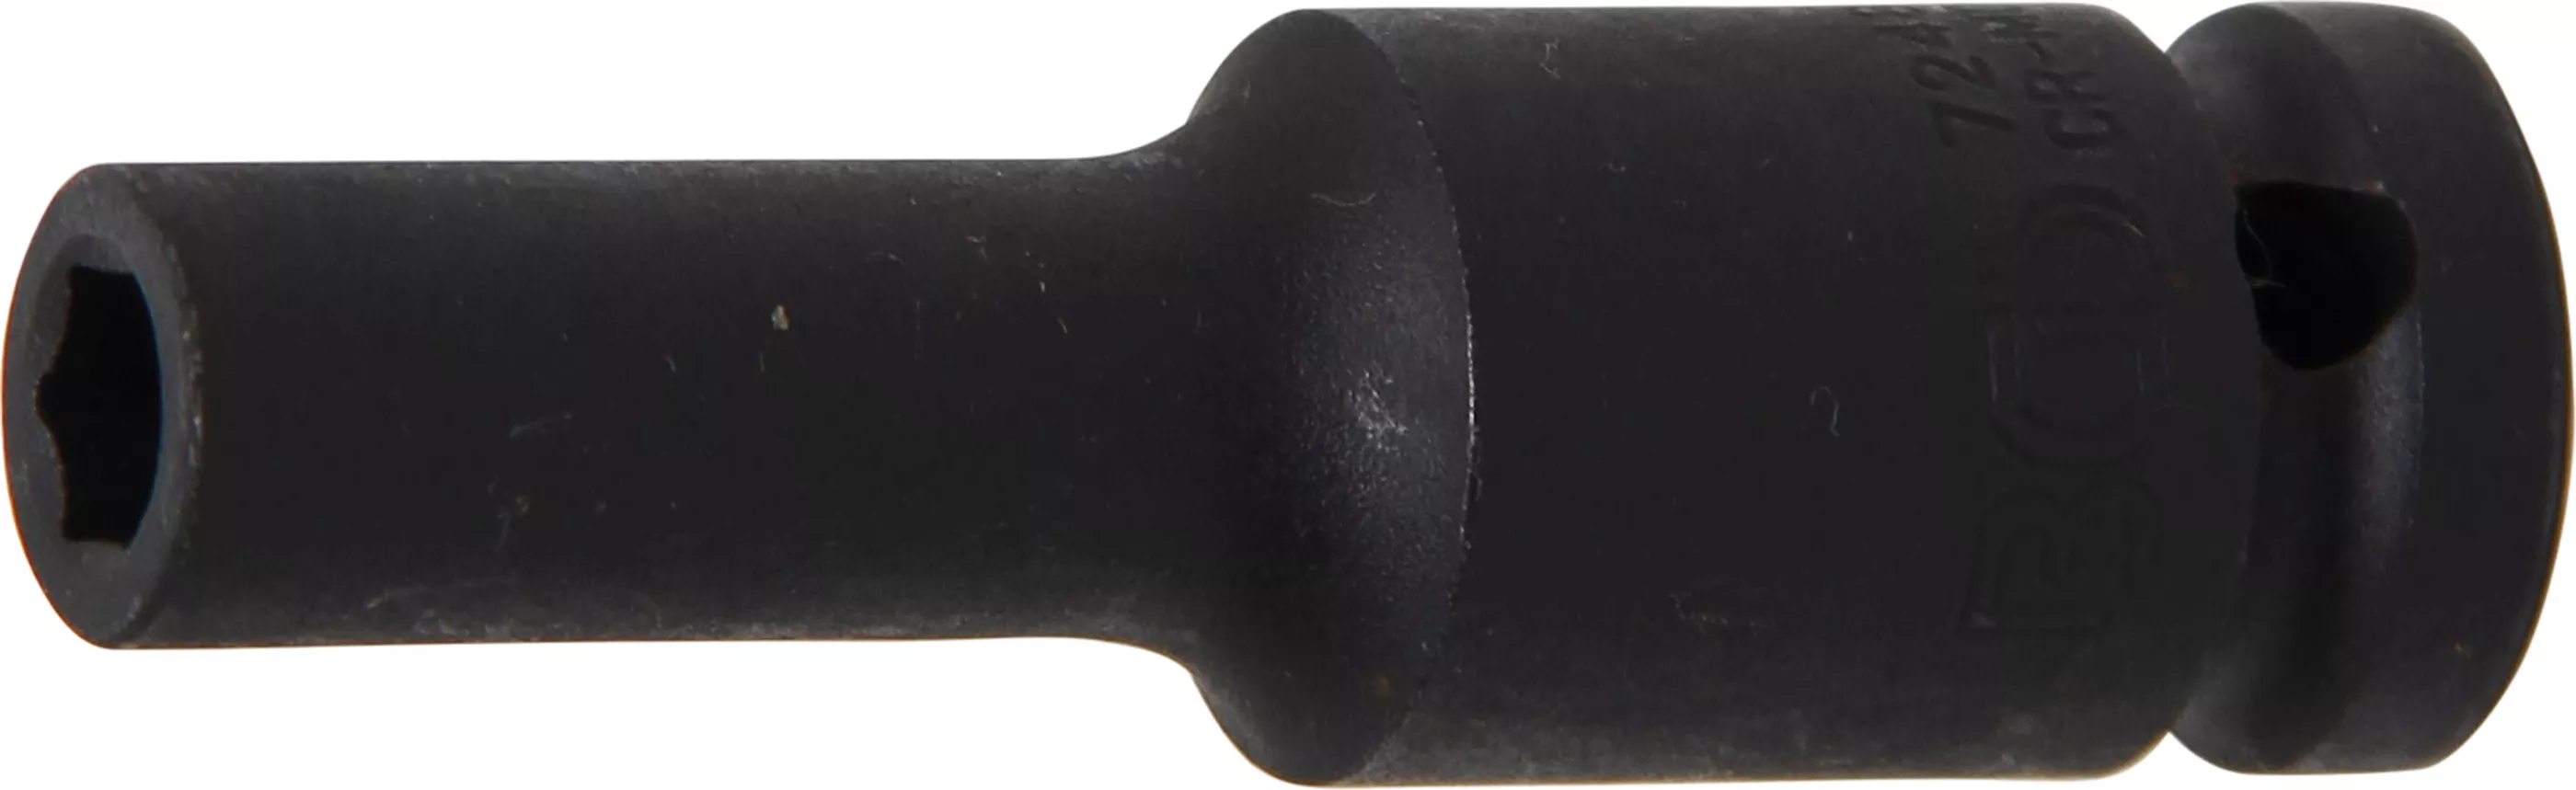 Rázový nástrčný klíč, šestihranný, 1/2", 8 mm - B7248